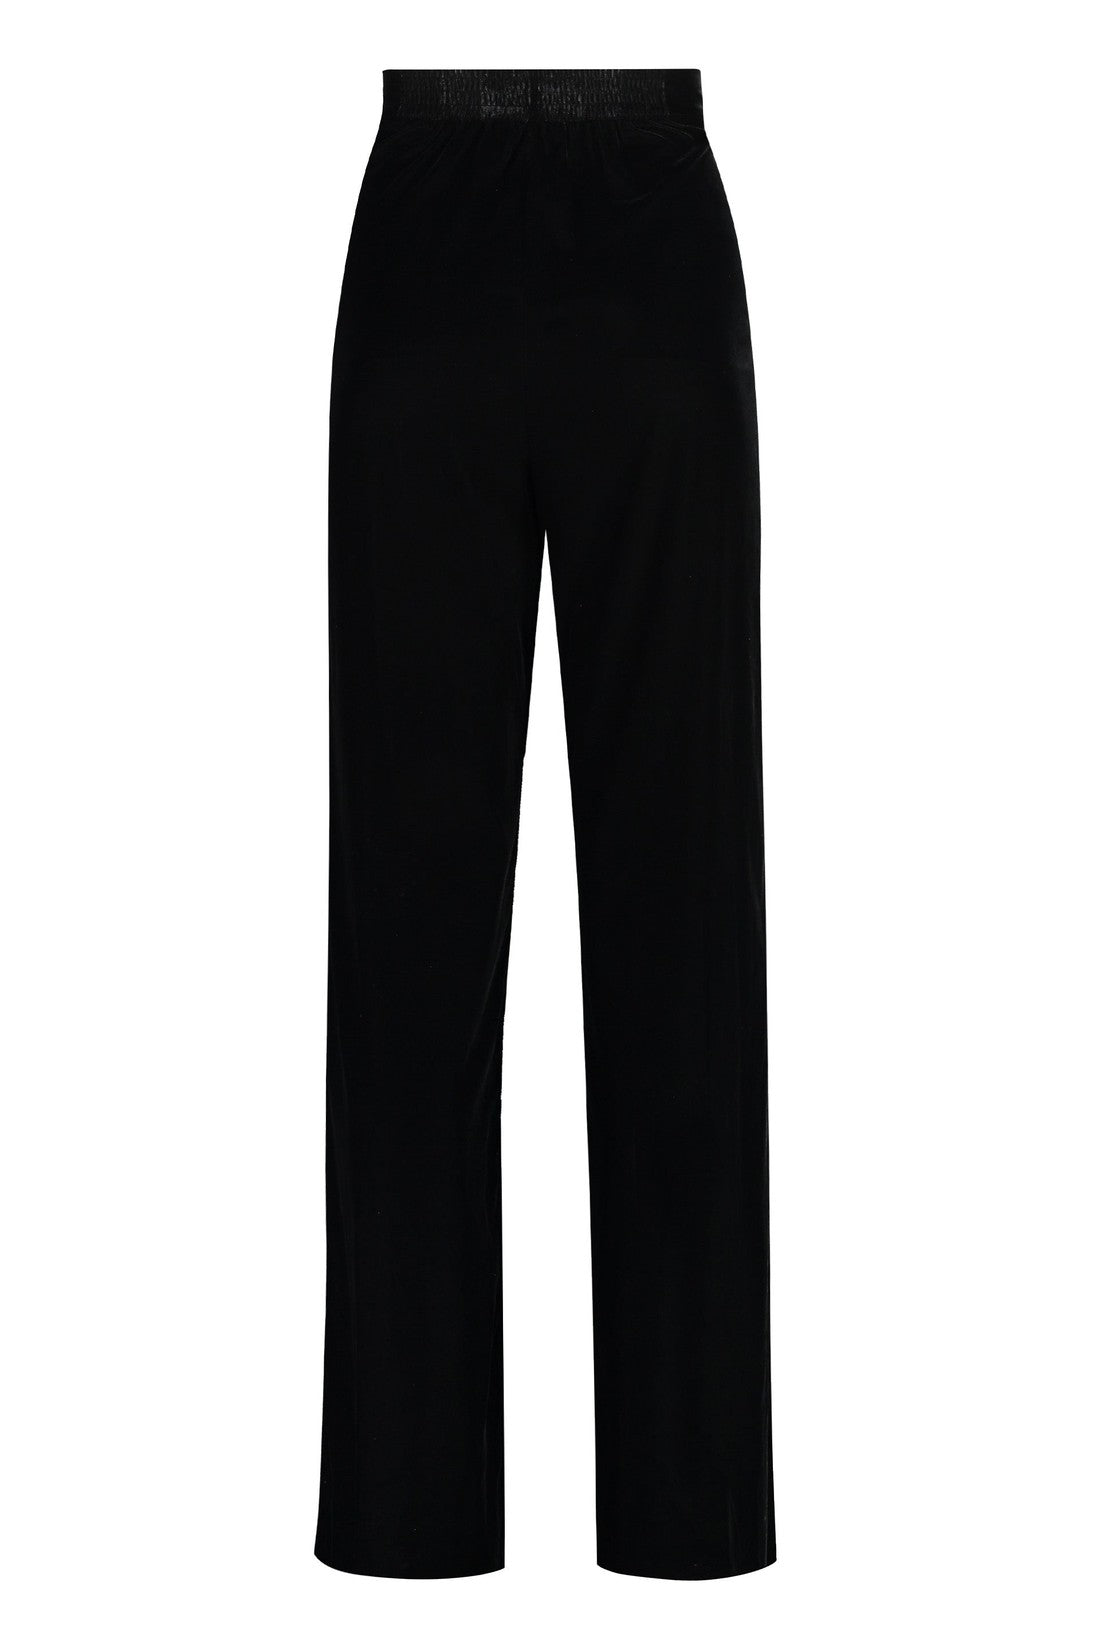 Etro-OUTLET-SALE-Velvet trousers-ARCHIVIST